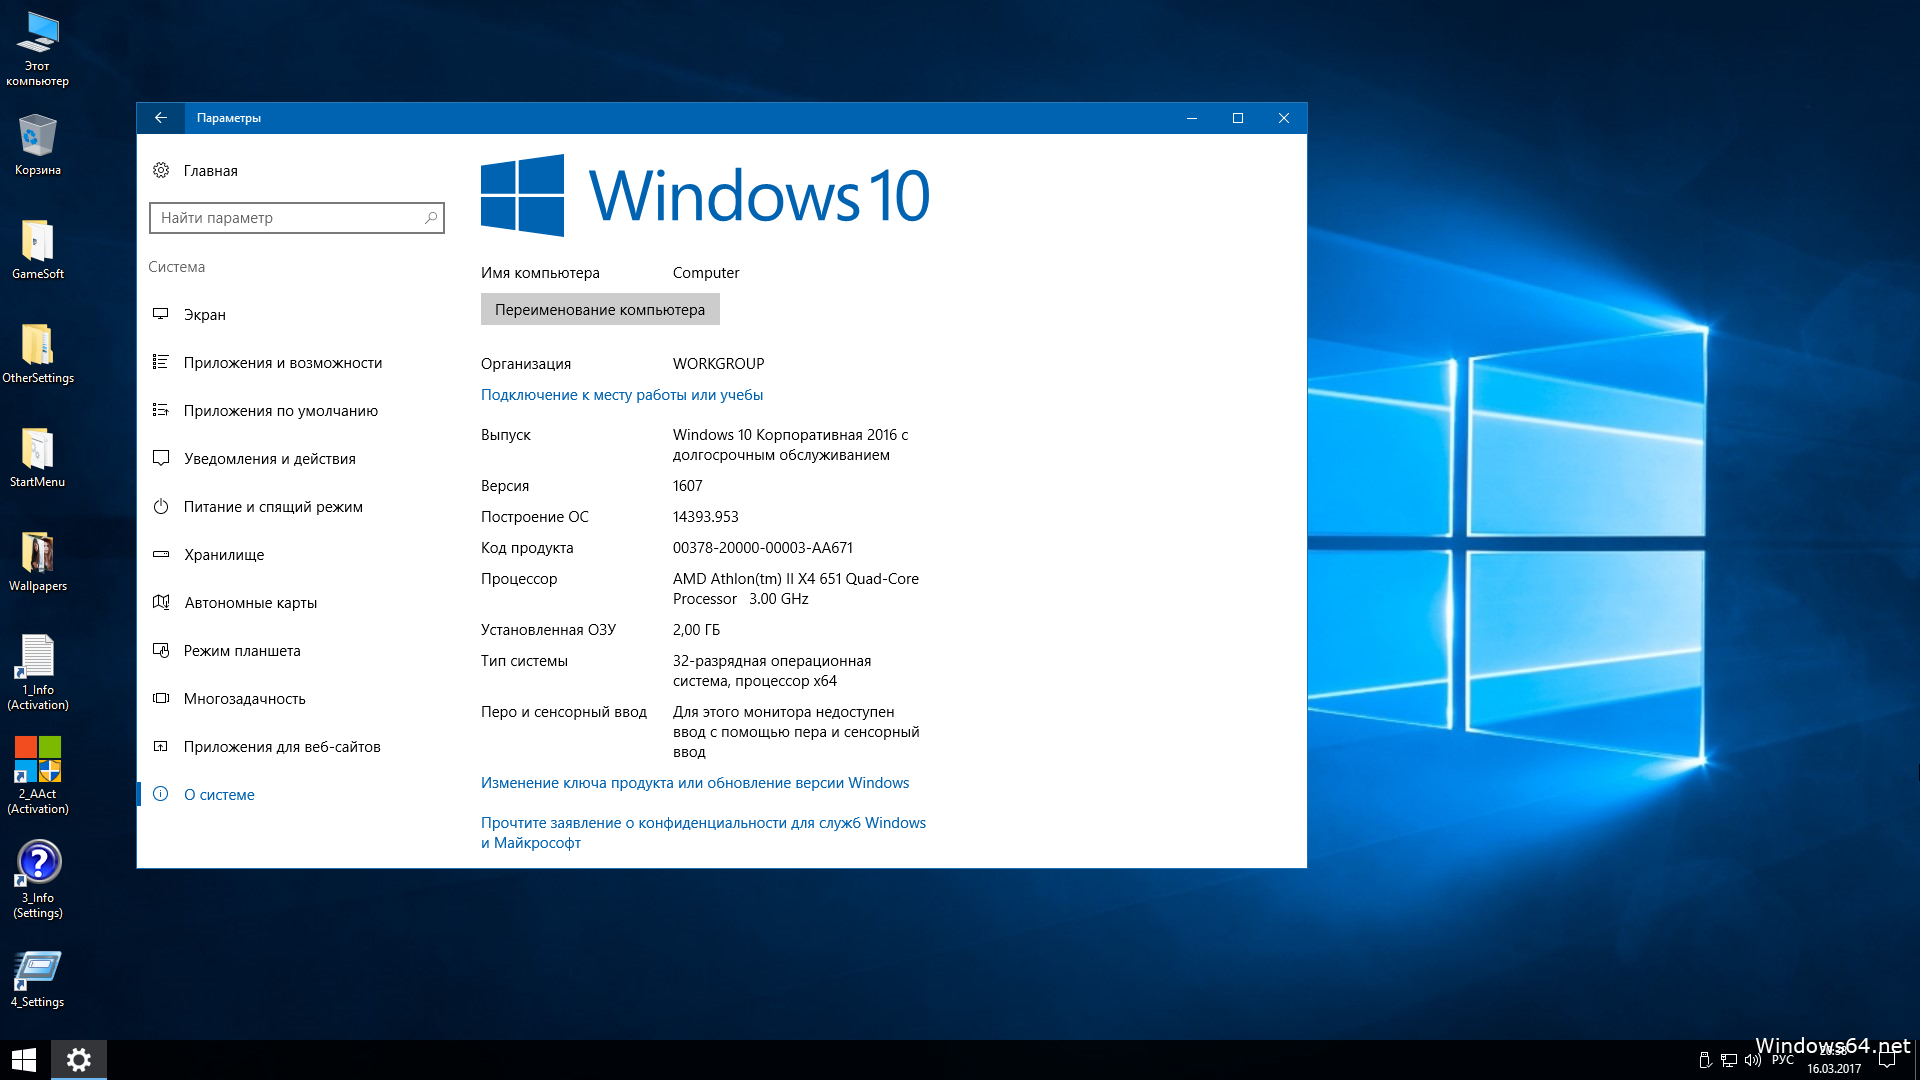 windows 10 enterprise ltsb 2015 torrent